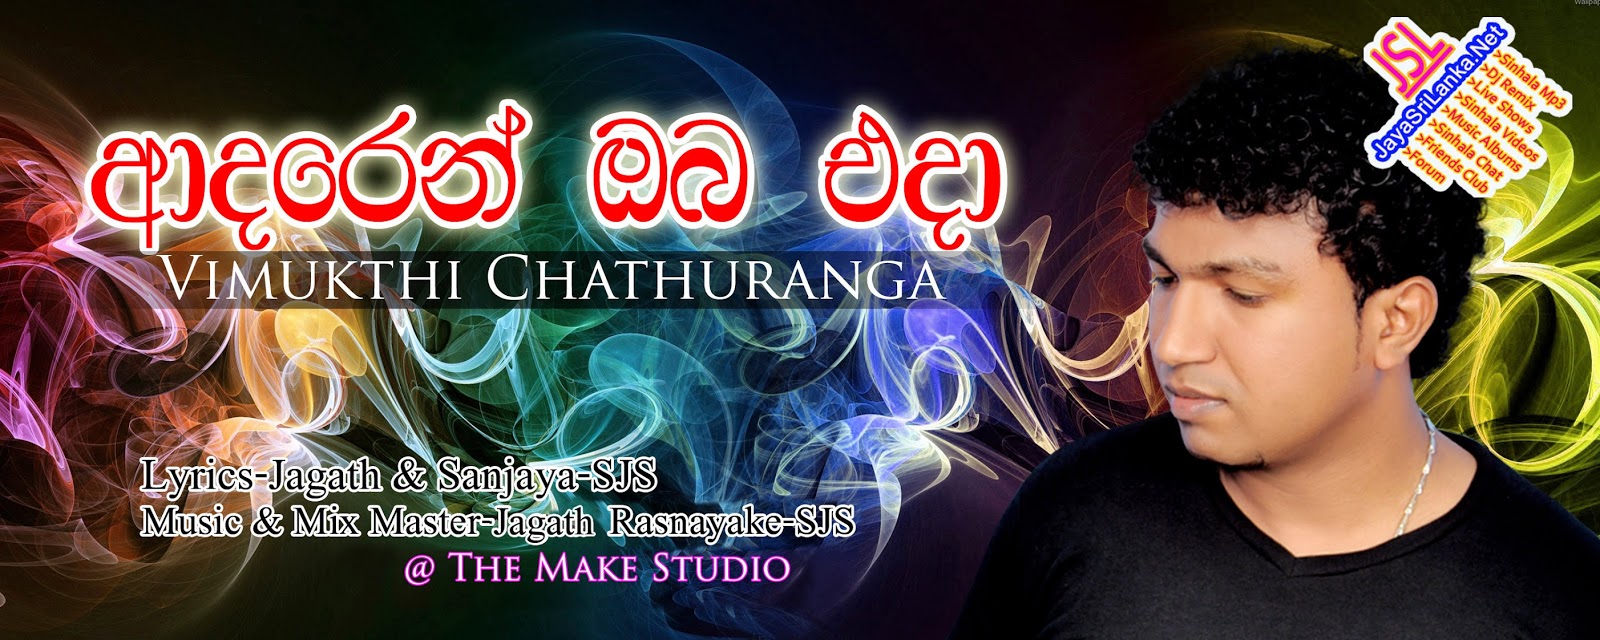 Adaren Oba Eda - Vimukthi Chathuranga New Song